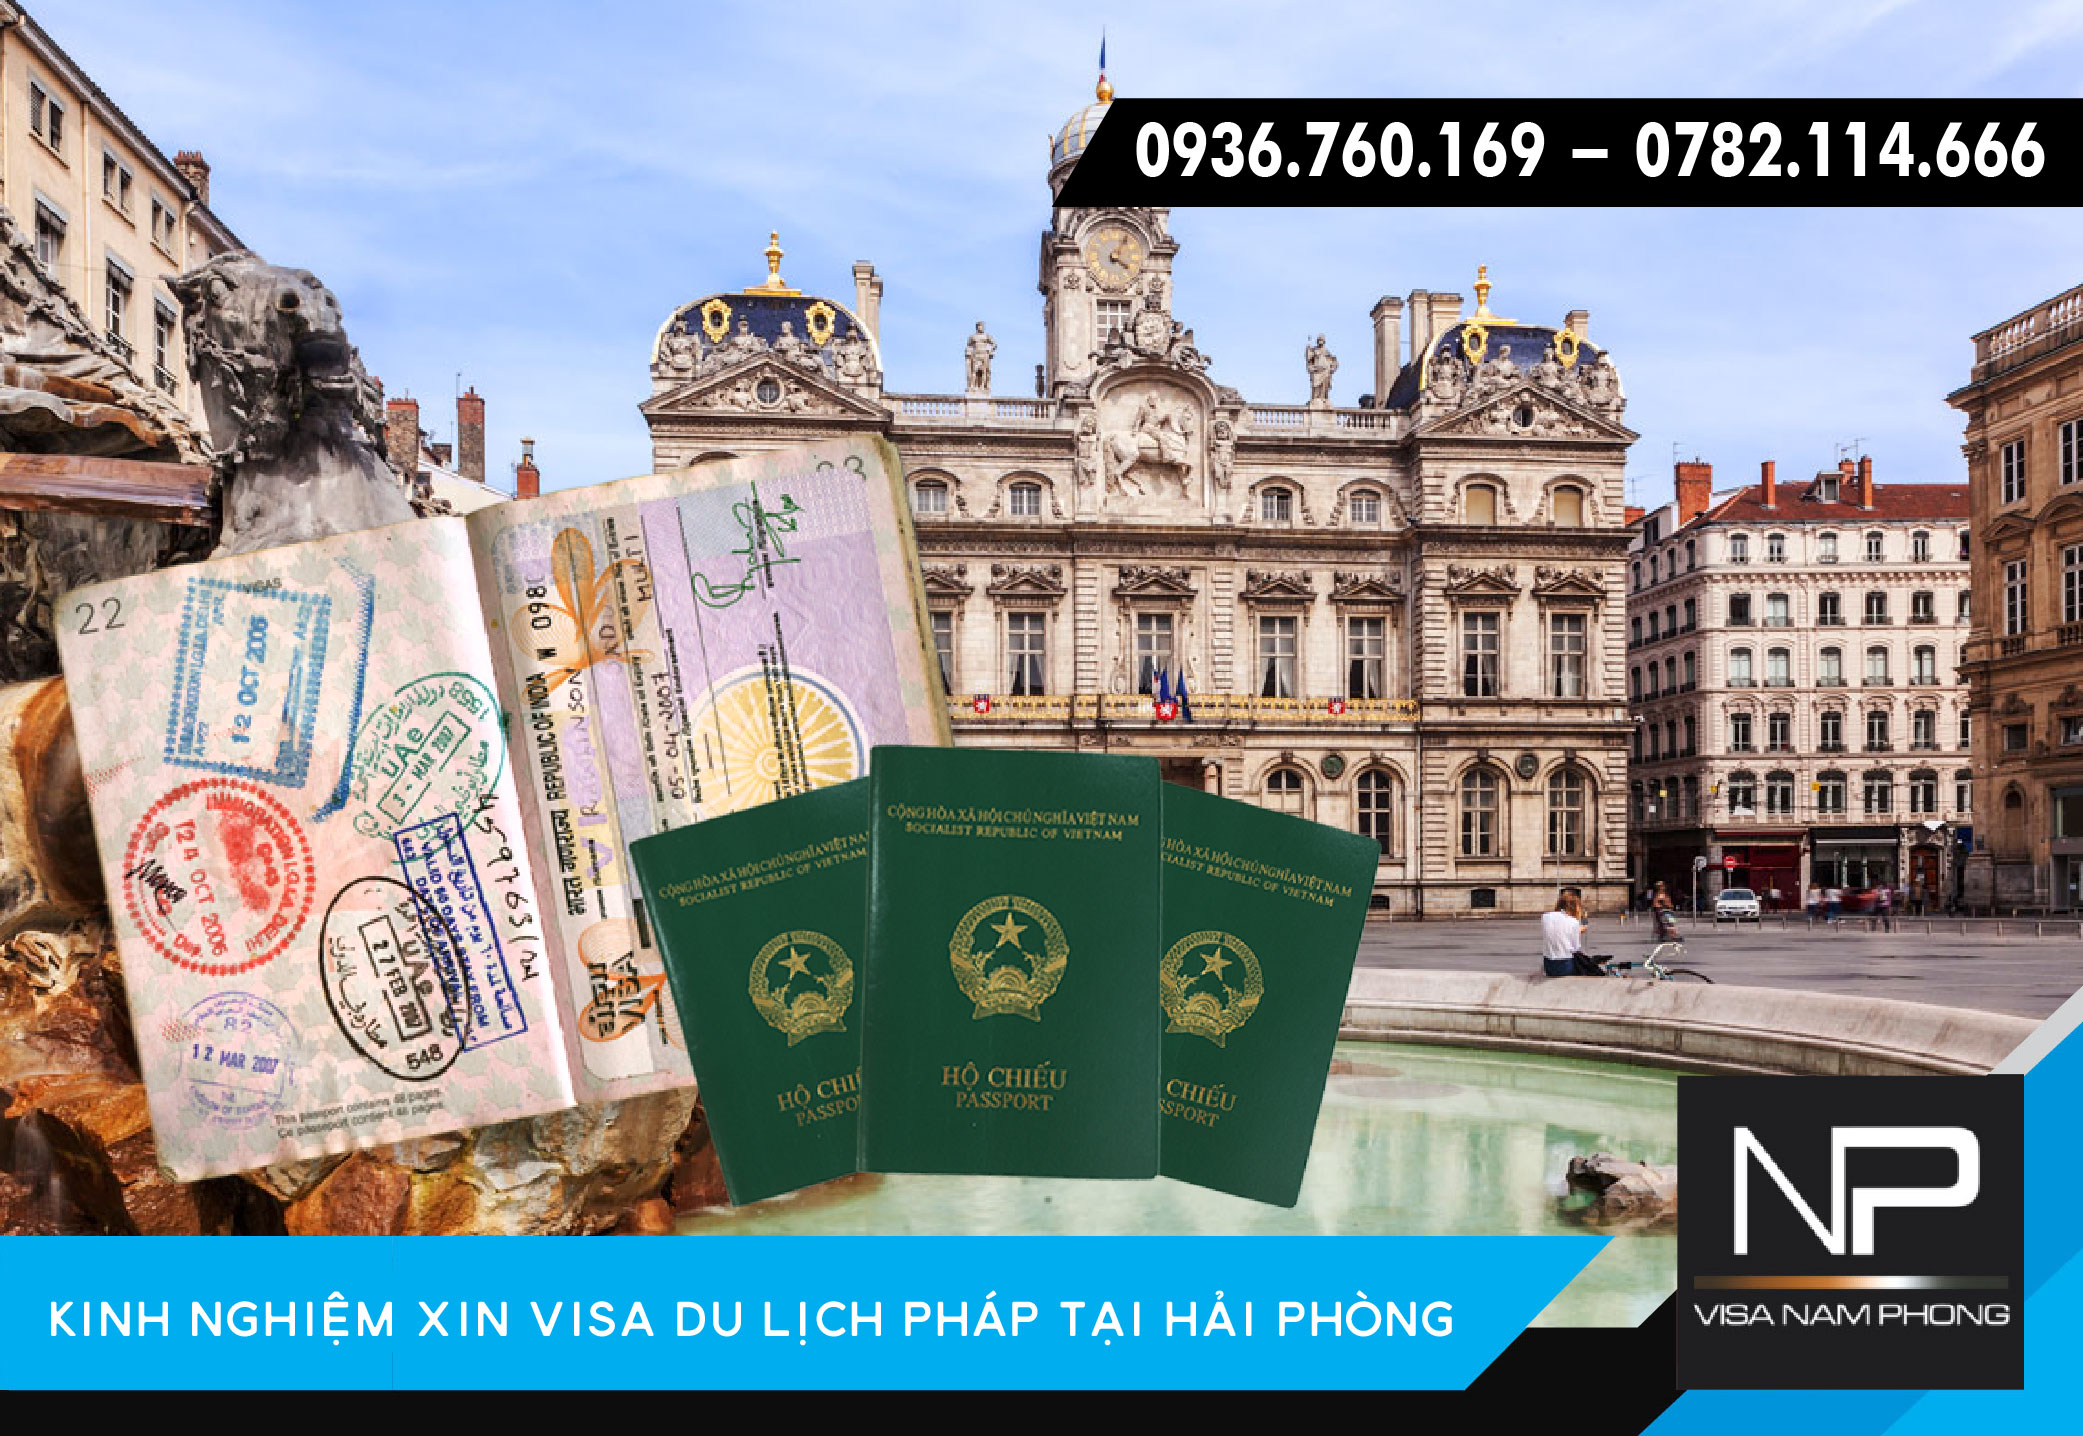 Kinh nghiệm xin visa du lịch Pháp tại Hải Phòng